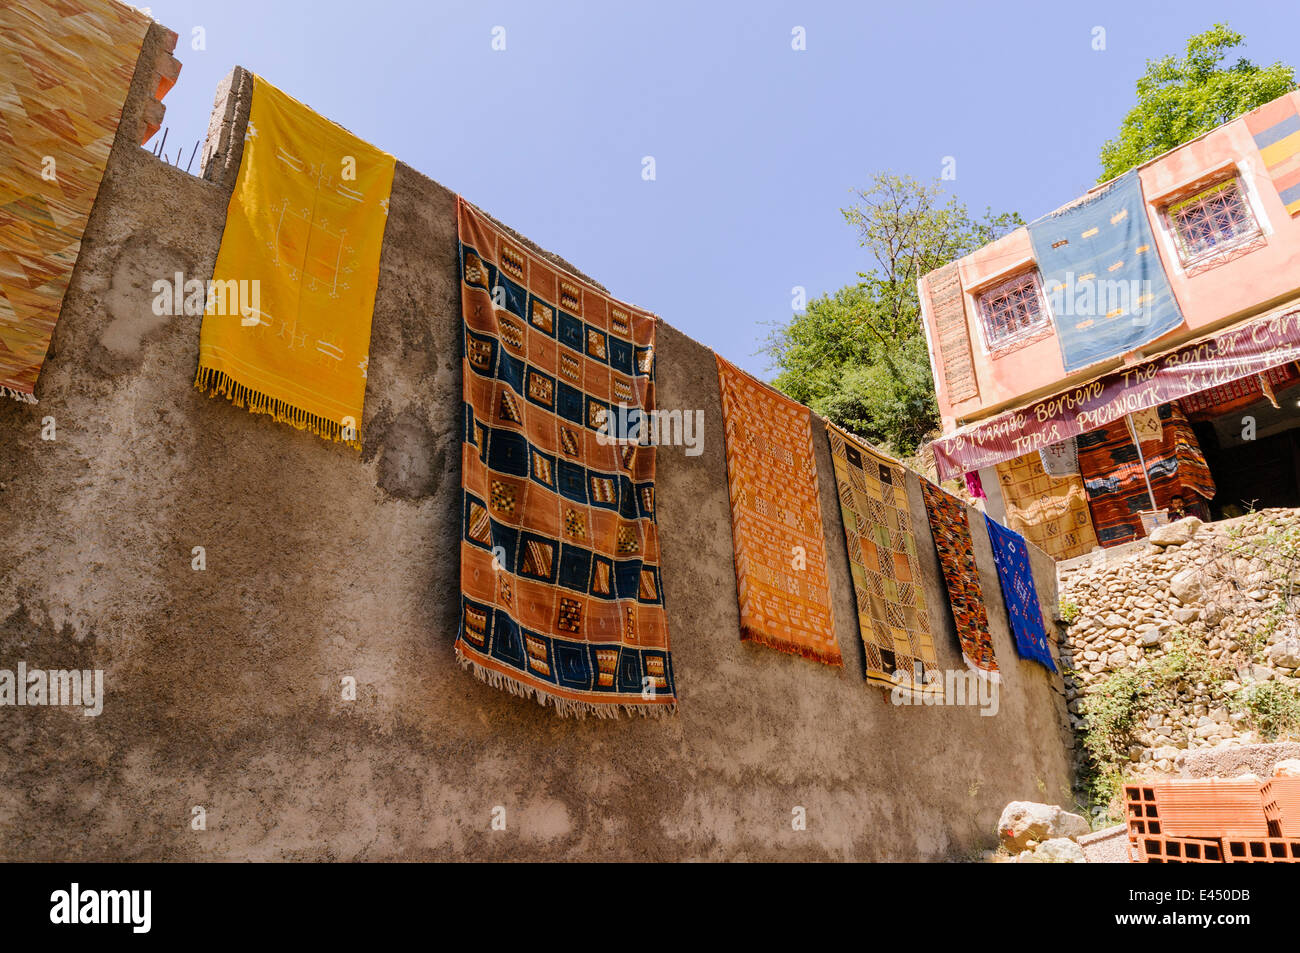 Marocchino tappeti fatti a mano per la vendita in un villaggio rurale in Atlas Mountains, Marocco Foto Stock